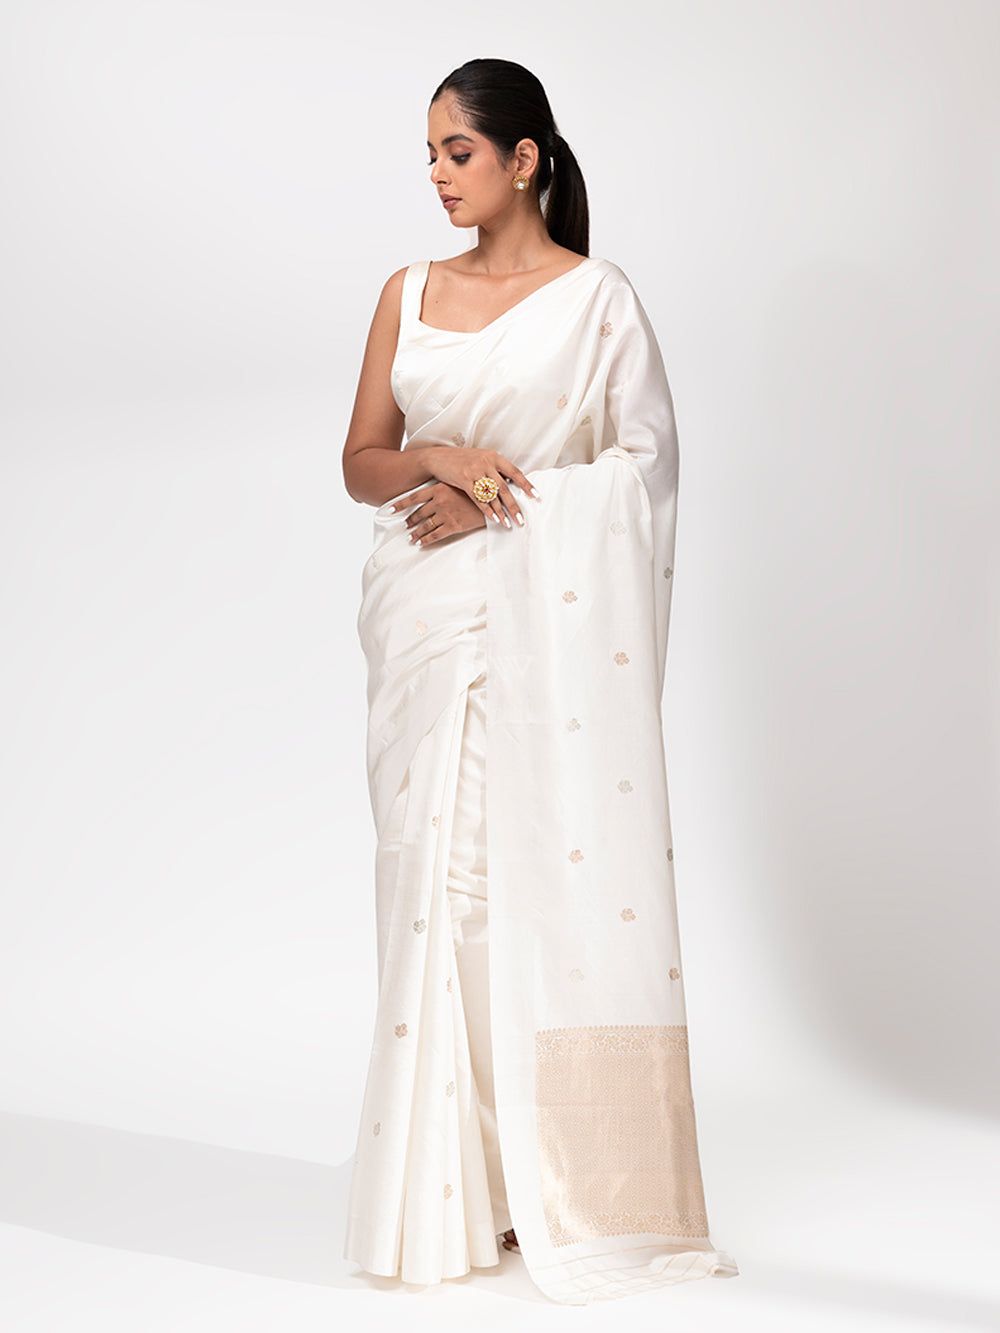 Sunitha Scharma In Almond White Handwoven Banarasi Katan Silk Saree –  Chinaya Banaras